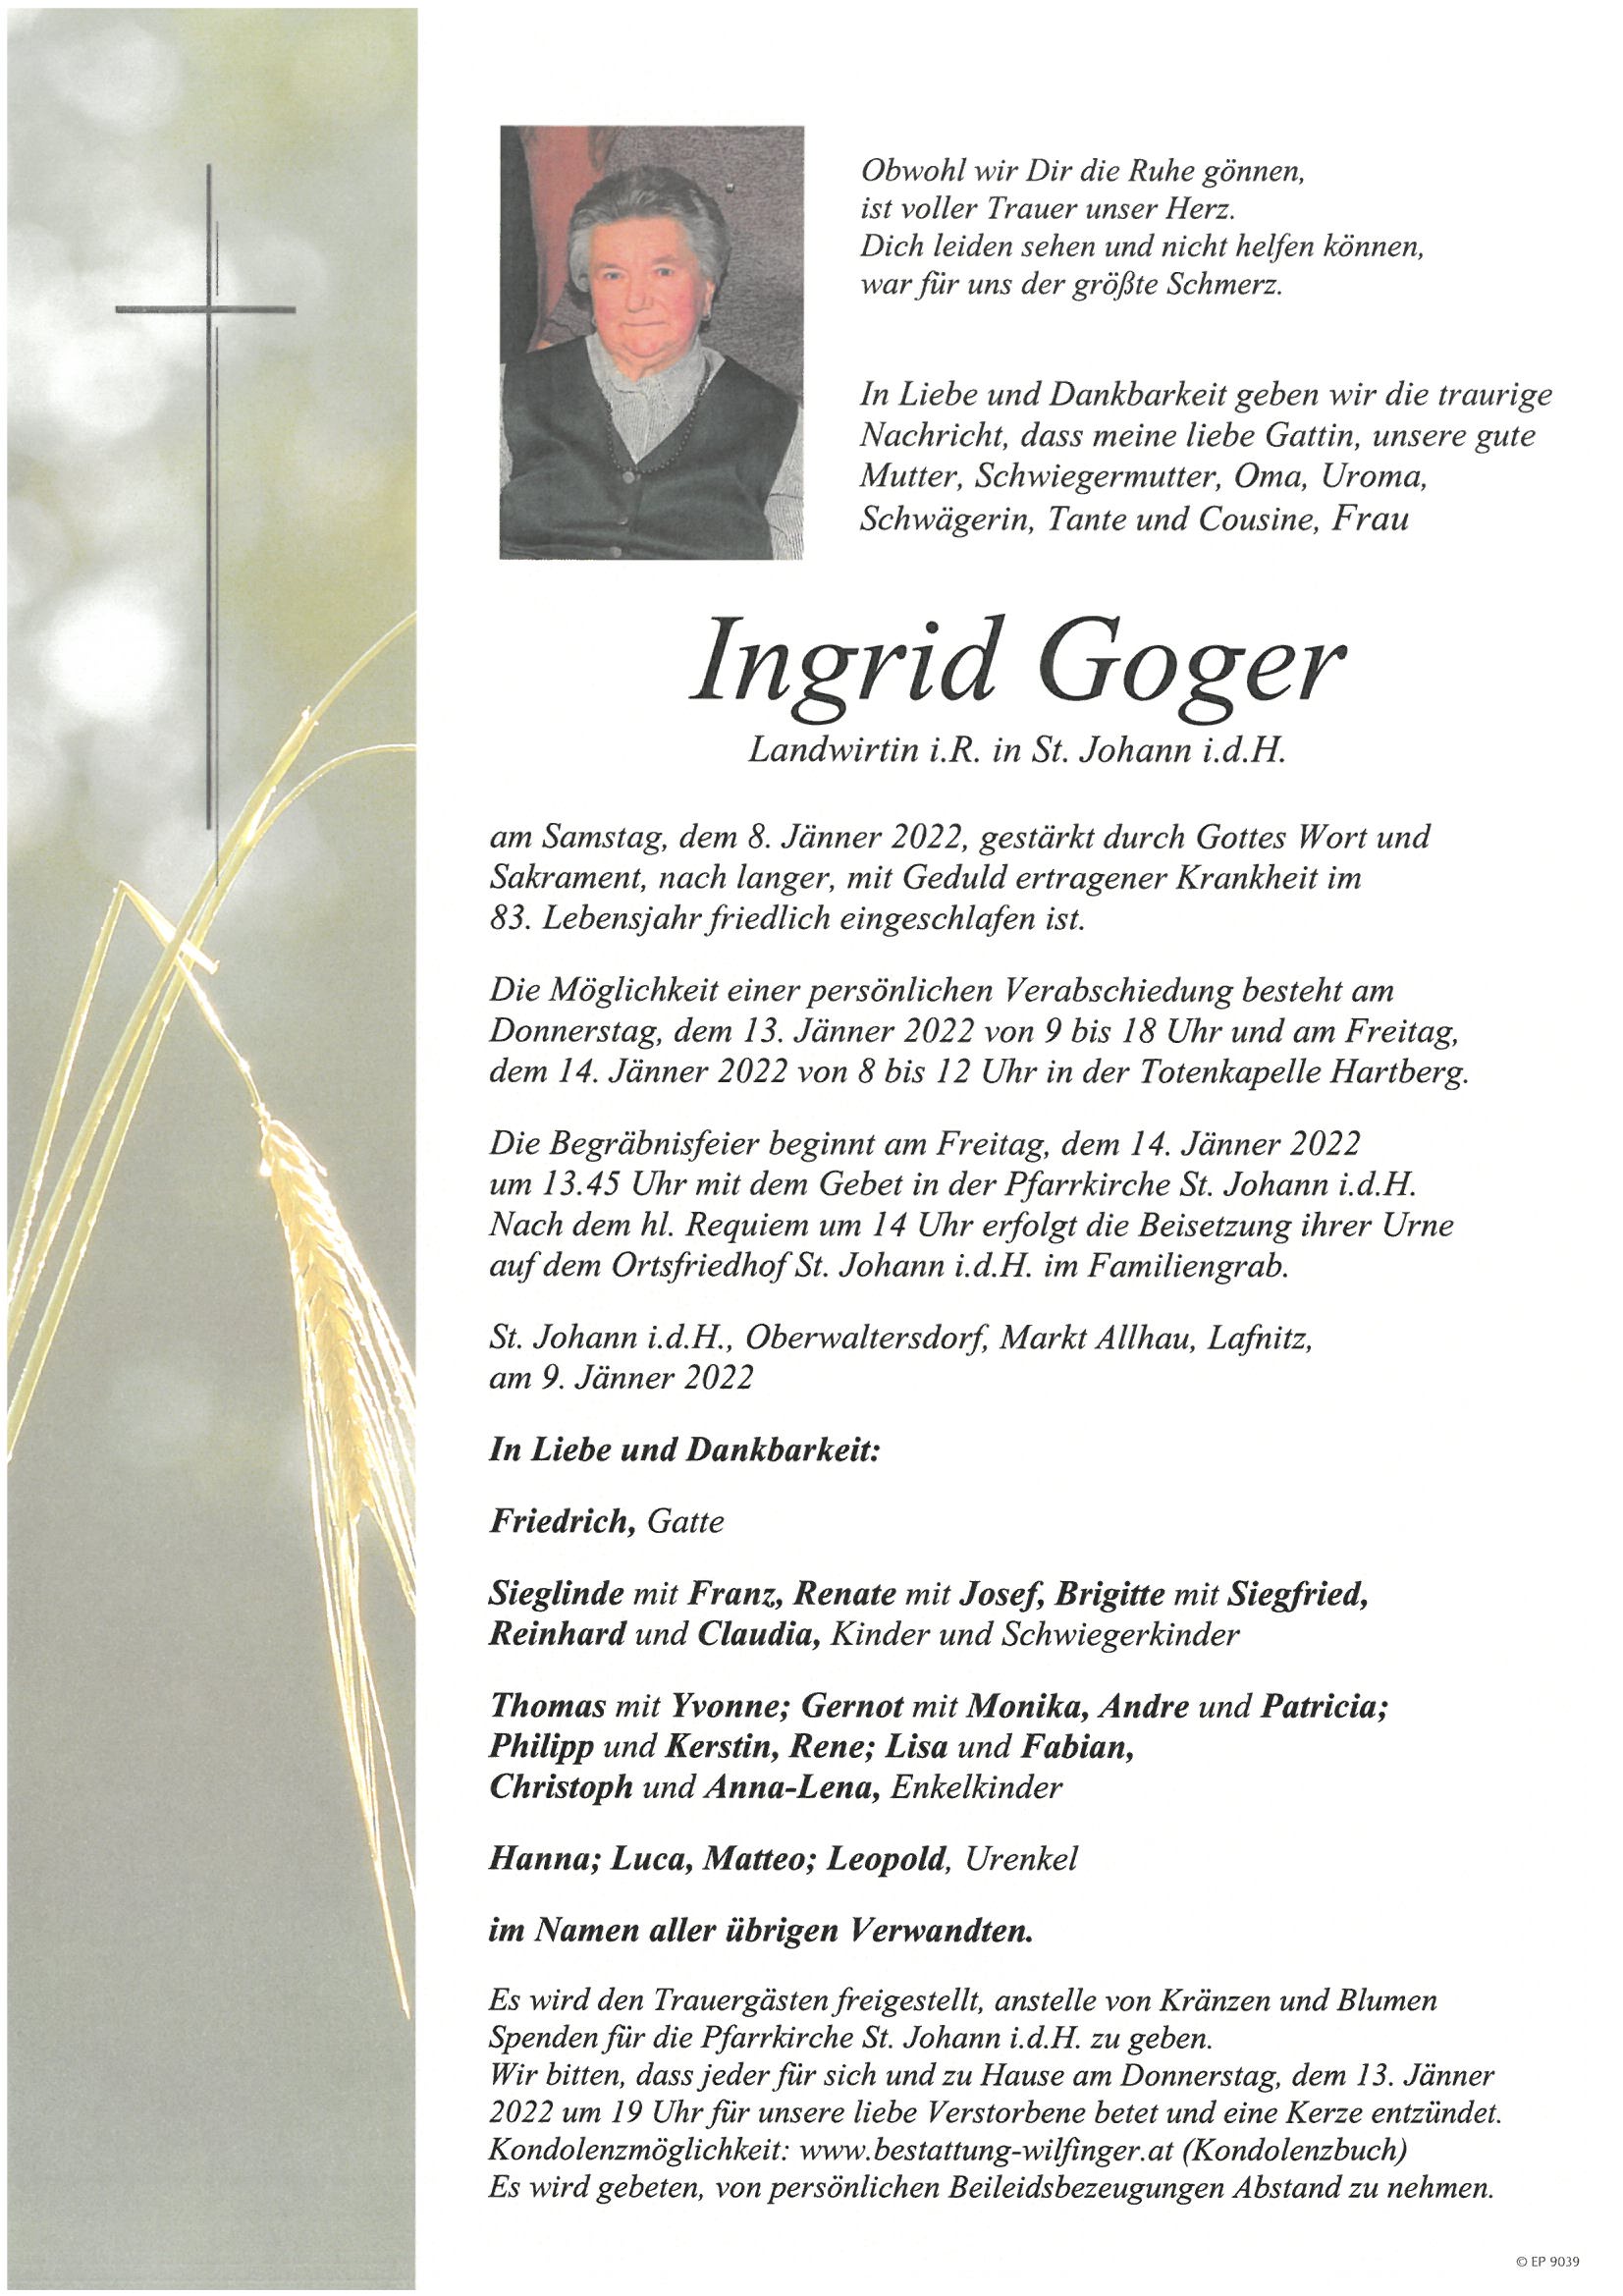 Ingrid Goger